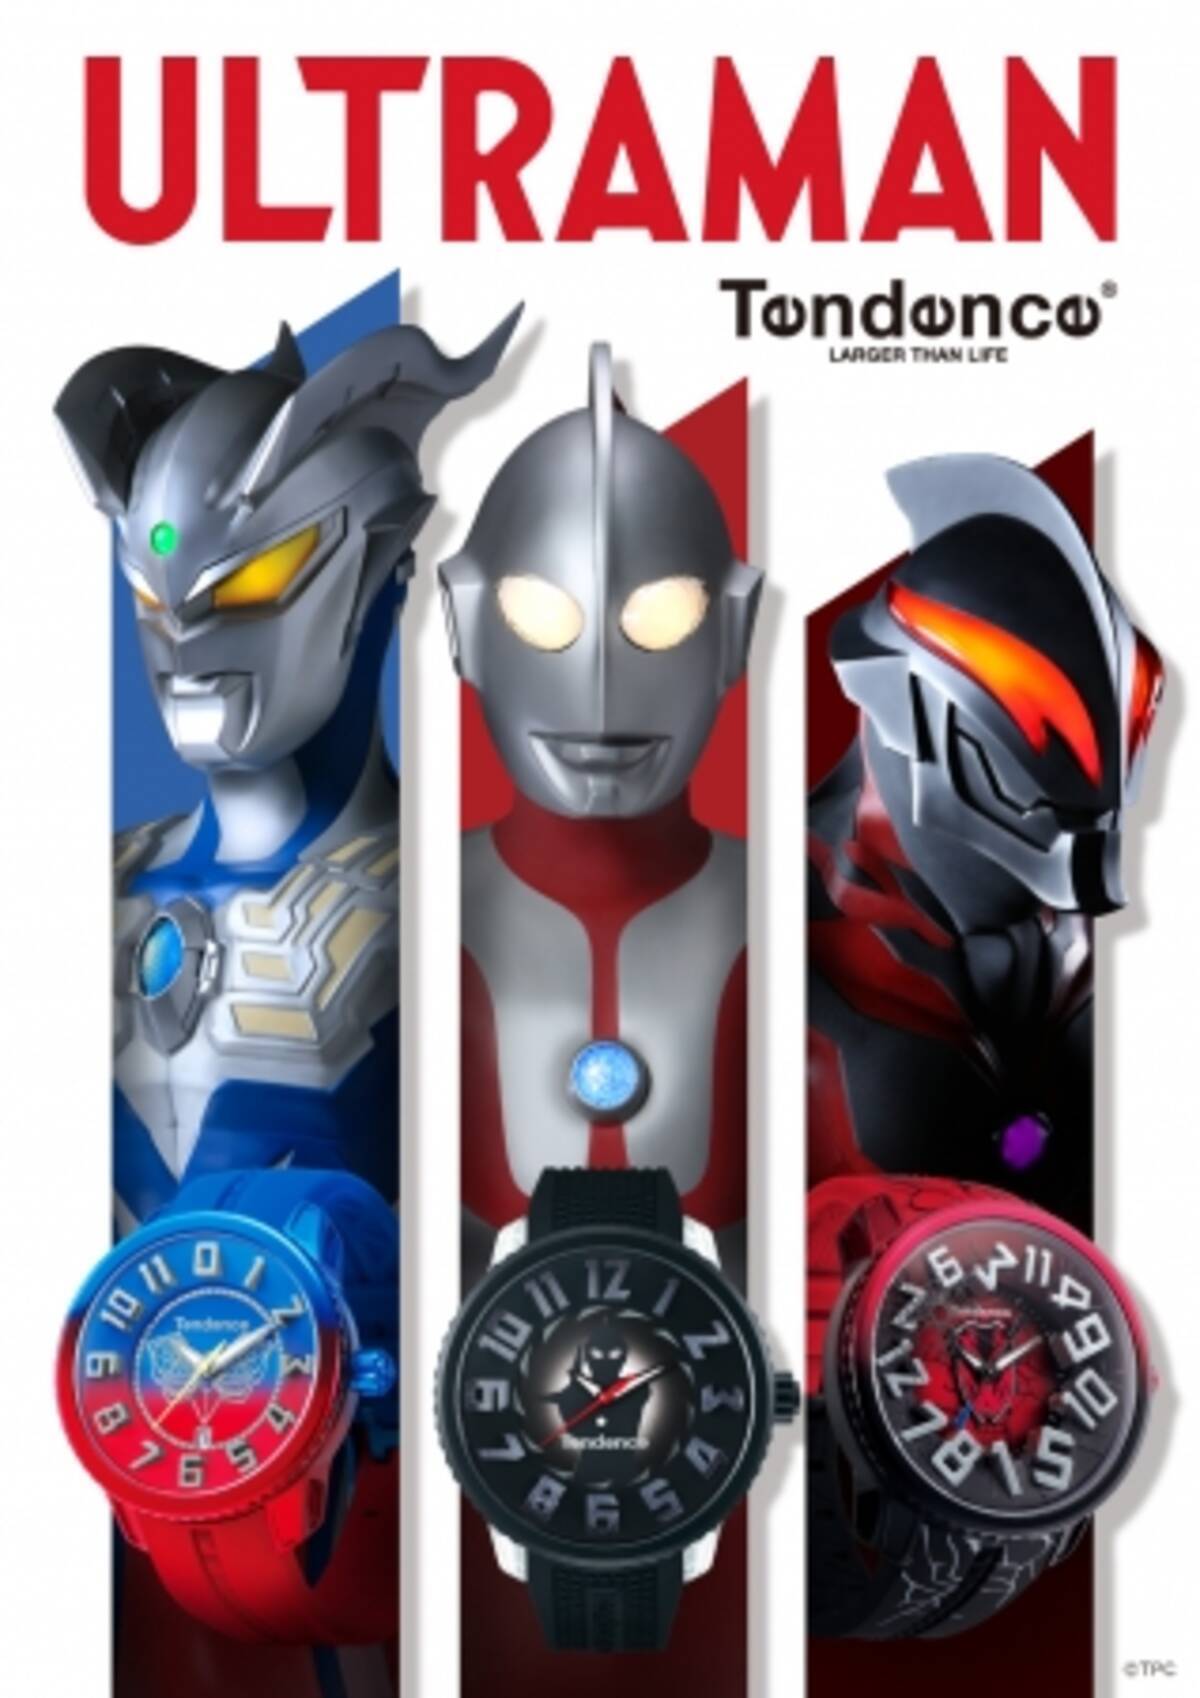 スイスの腕時計ブランド Tendence テンデンス からウルトラマンシリーズのキャラクターをモチーフにした ウルトラマンコレクション ウォッチ3種と10周年アニバーサリーboxセットが登場 年6月5日 エキサイトニュース 6 9